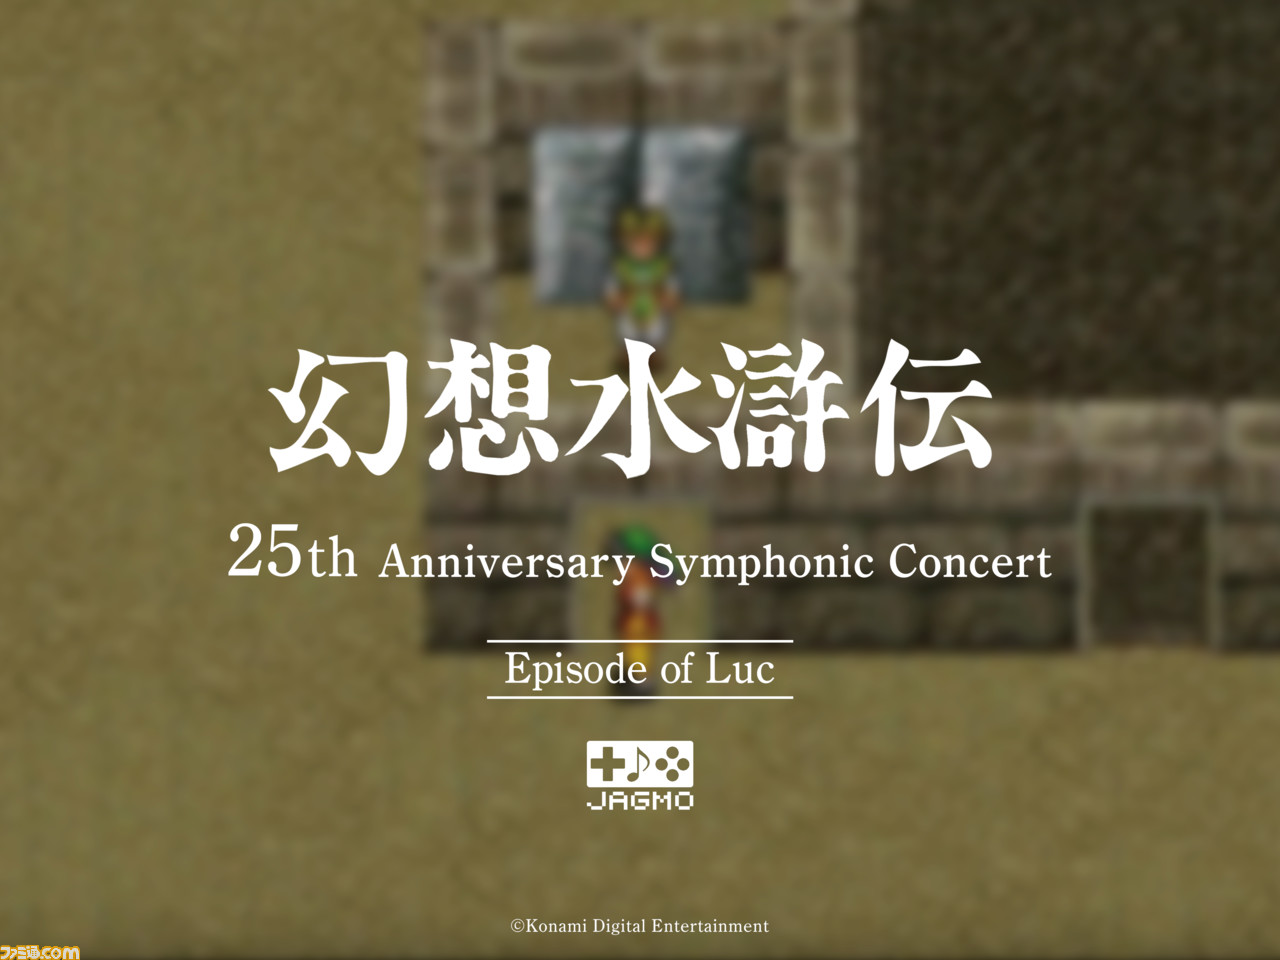 幻想水滸伝』シリーズのフルオーケストラコンサートツアーがオンライン